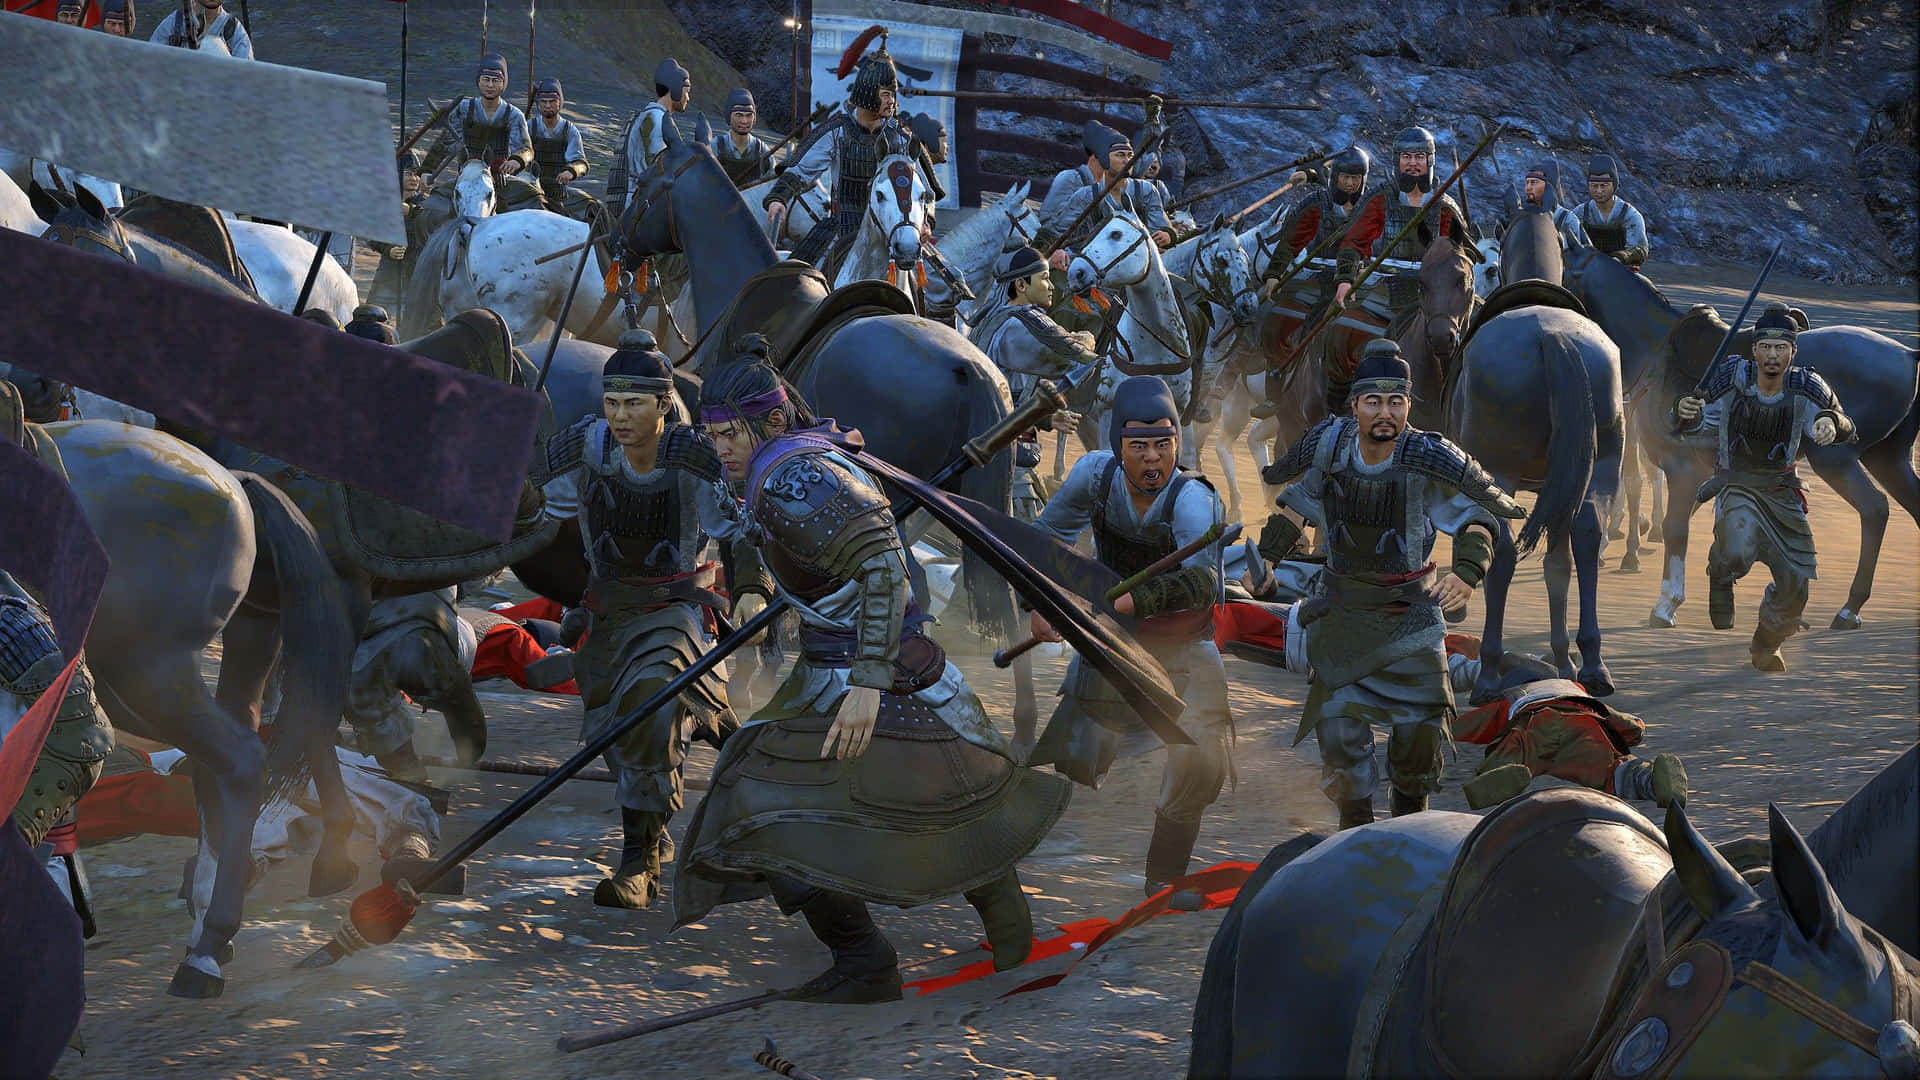 Einegruppe Von Männern Auf Pferden Kämpft In Einer Schlacht. Wallpaper